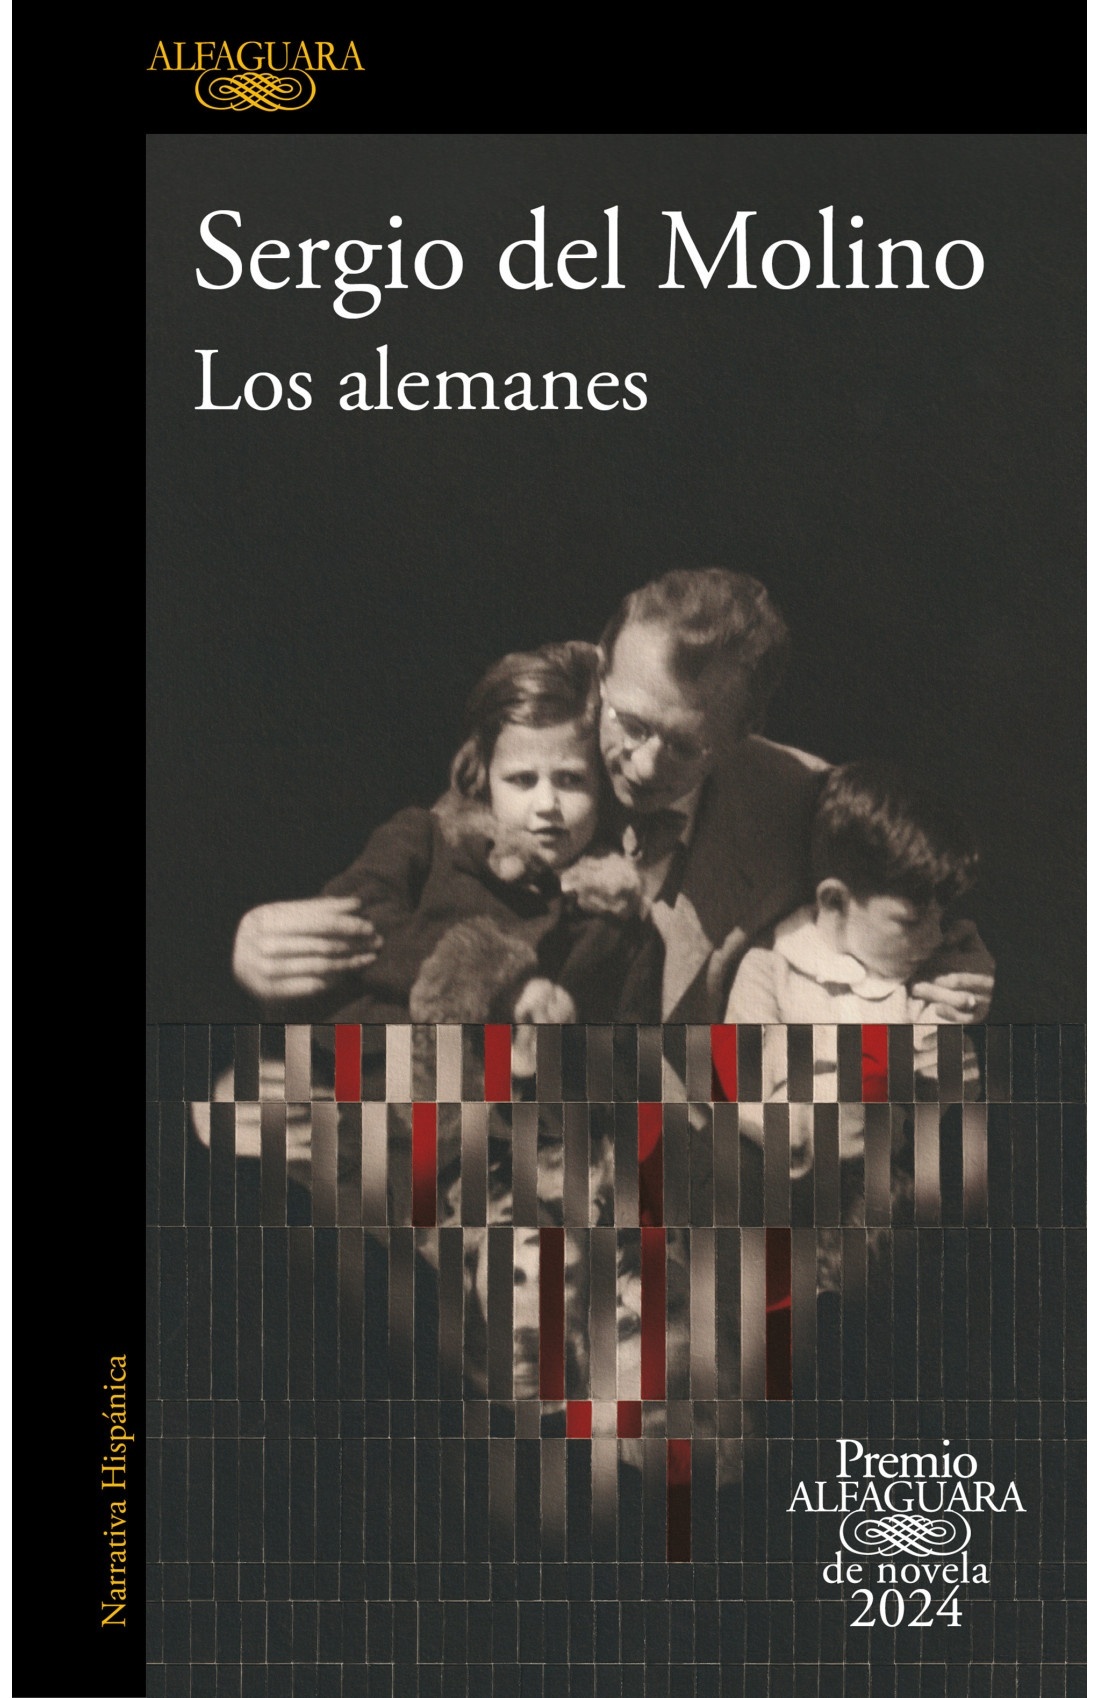 Alemanes, Los "Premio Alfaguara de novela 2024"